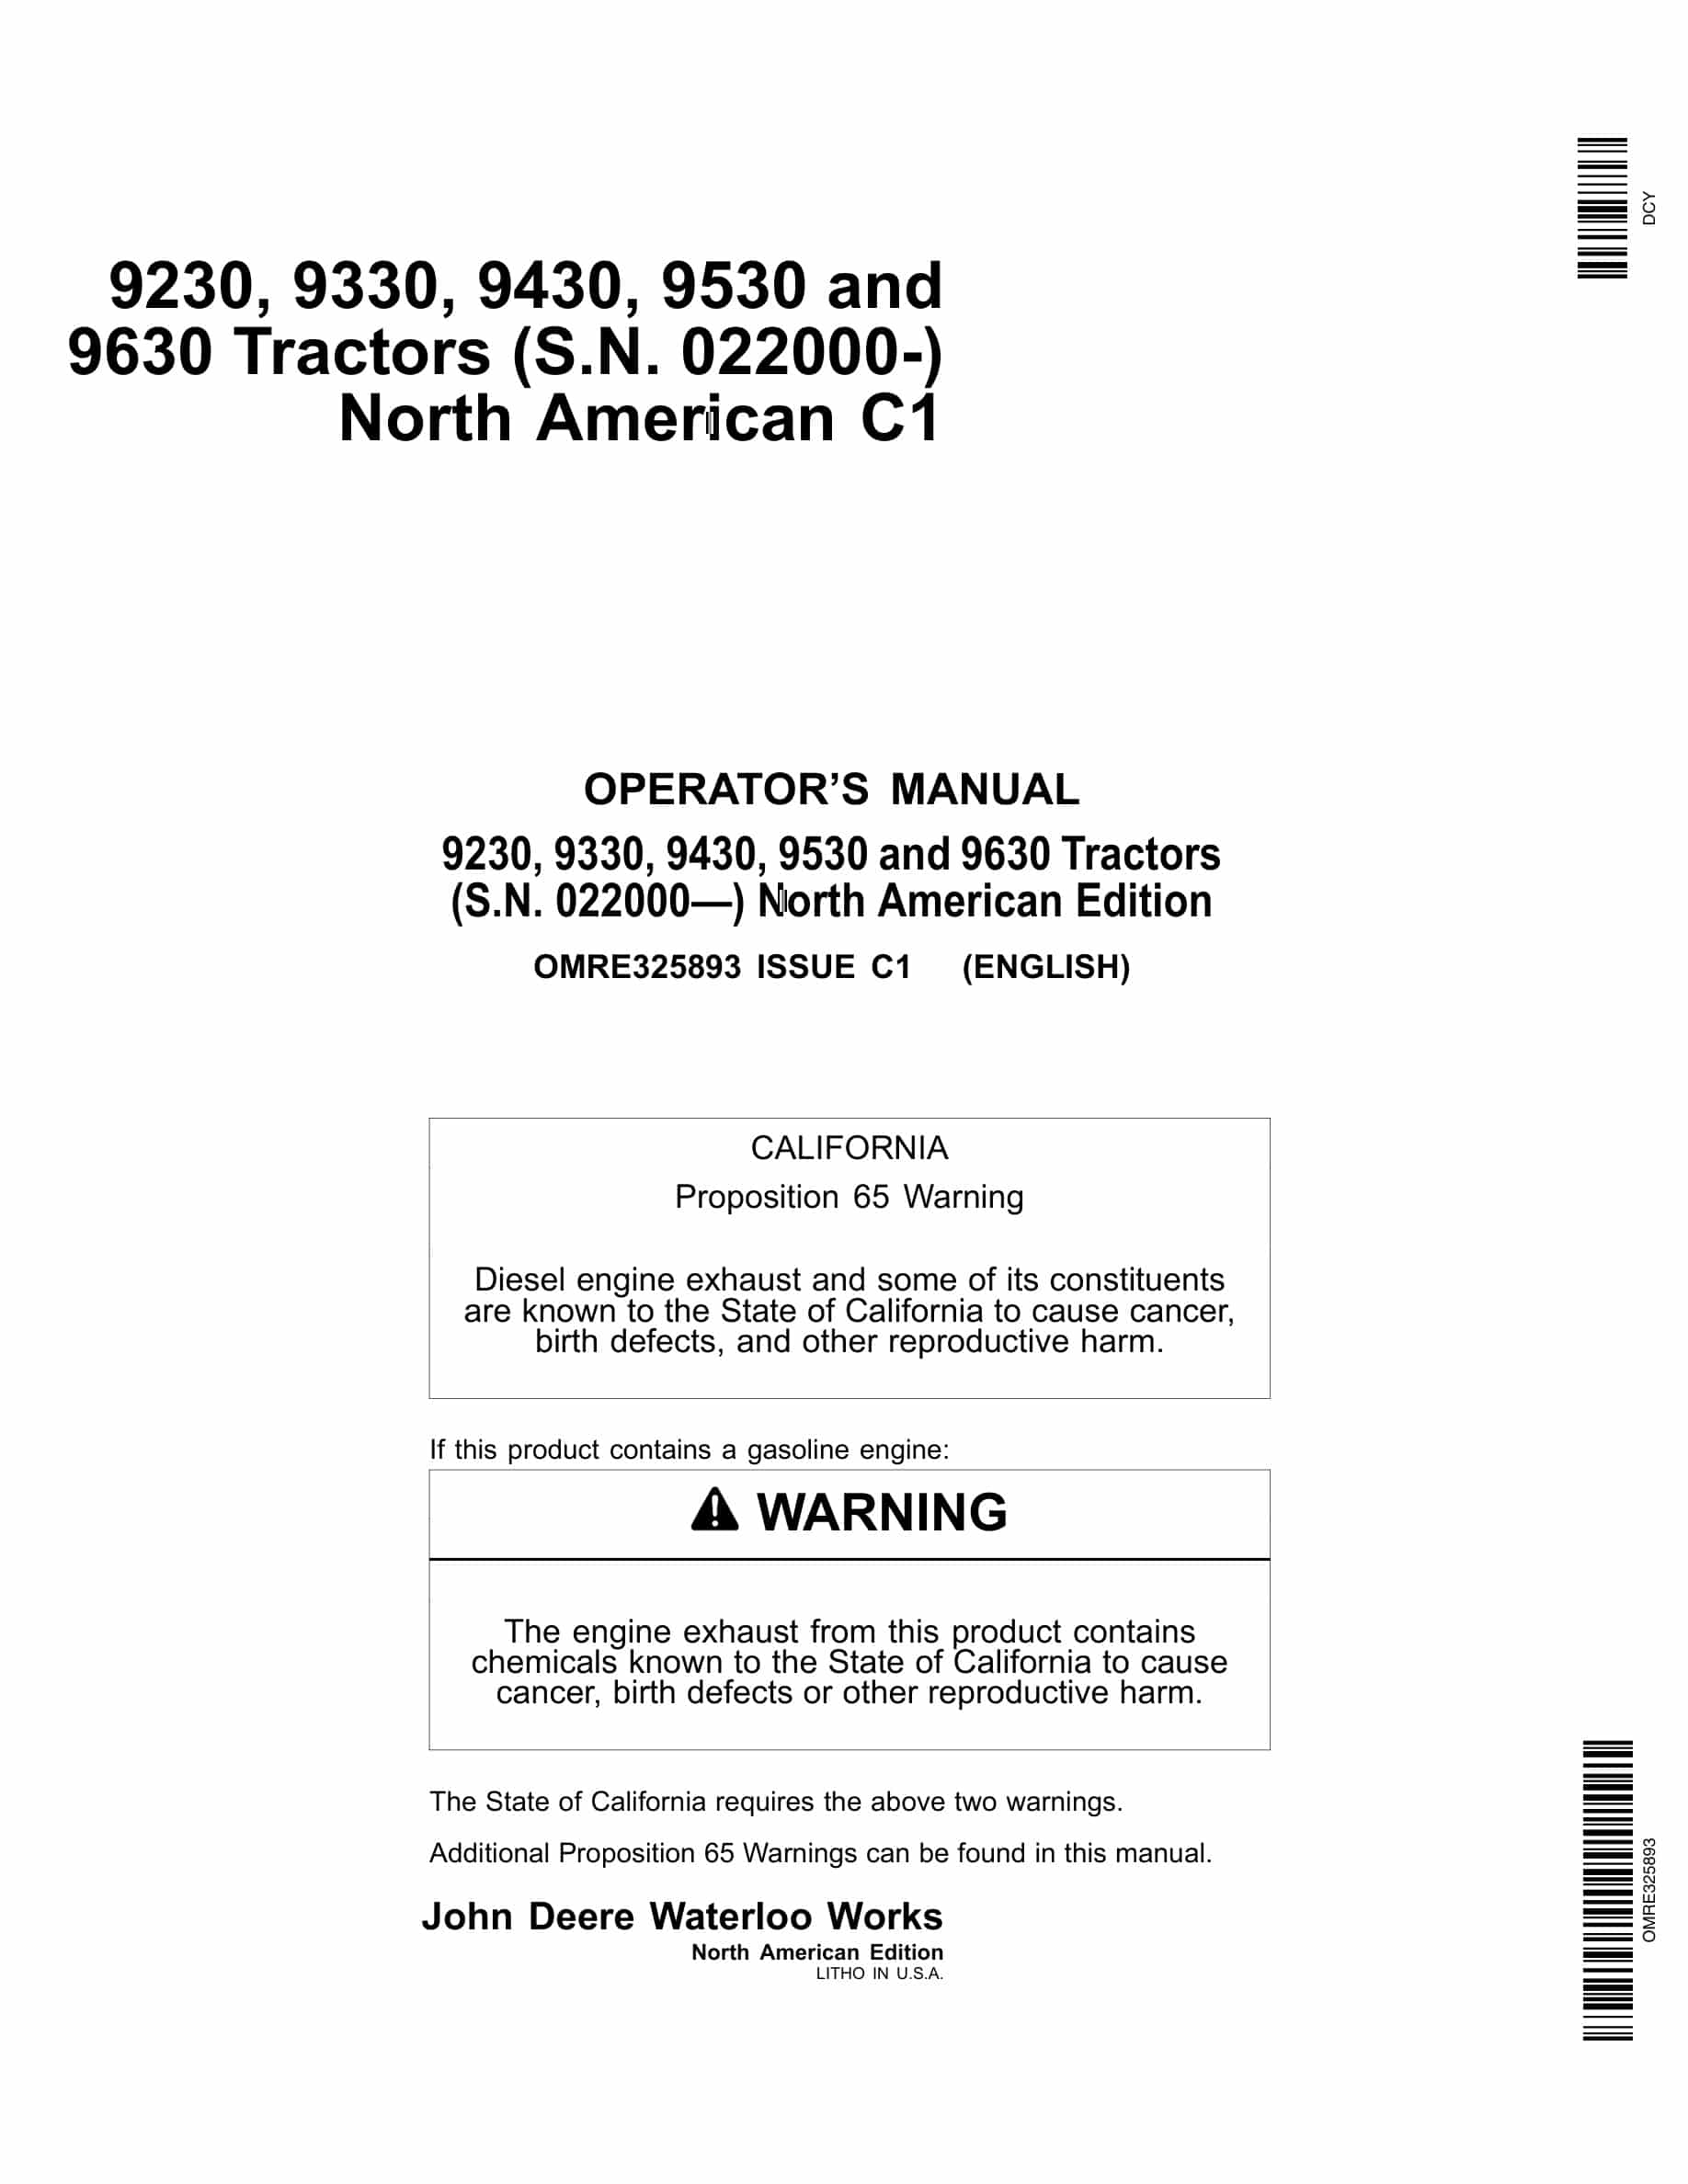 John Deere 9230, 9330, 9430, 9530 and 9630 Tractor Operator Manual OMRE325893-1